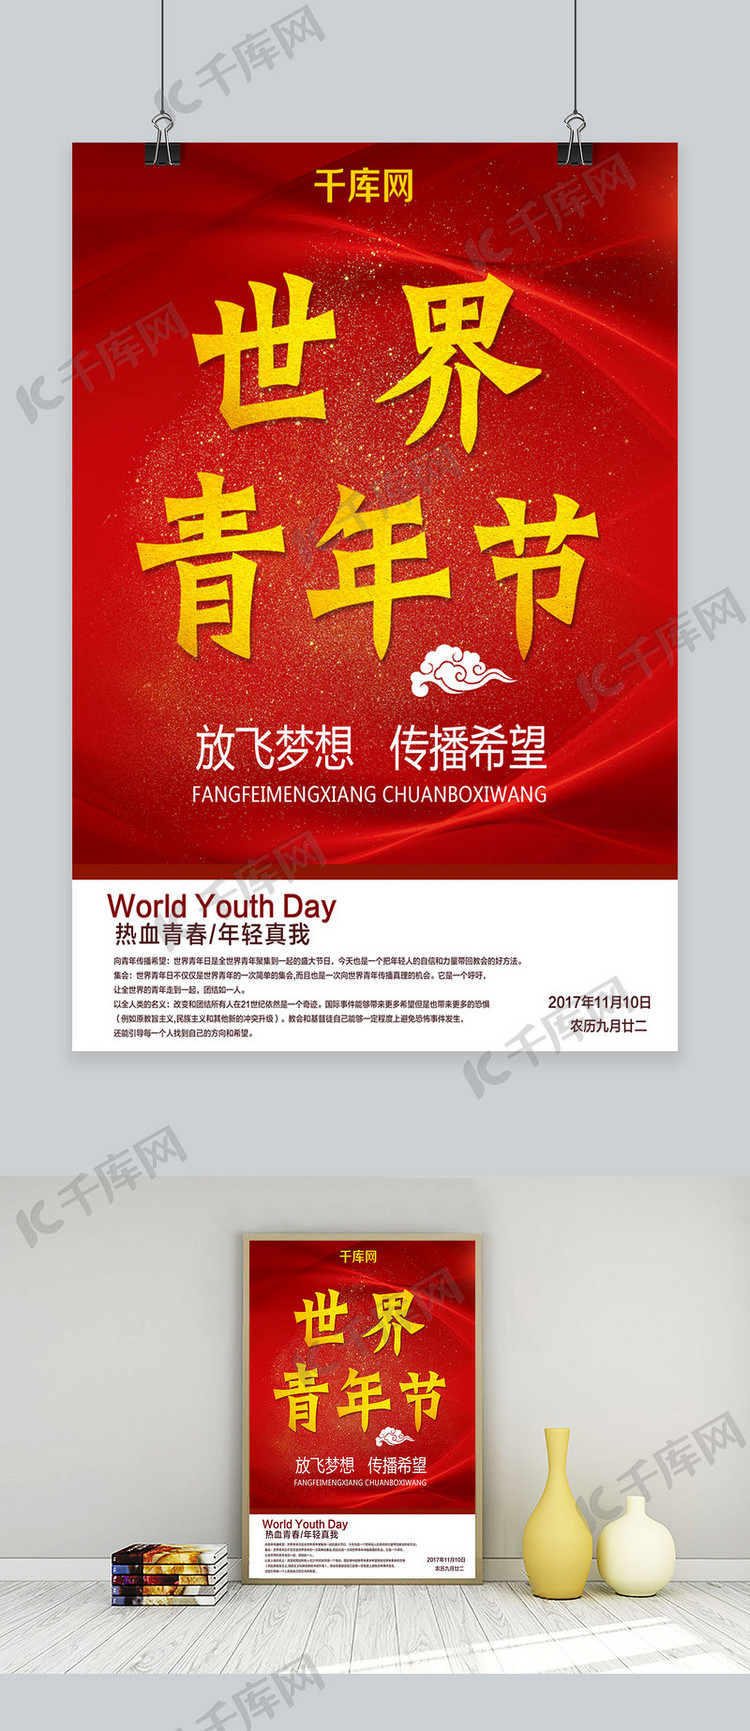 红色简约世界青年节宣传广告节日海报设计